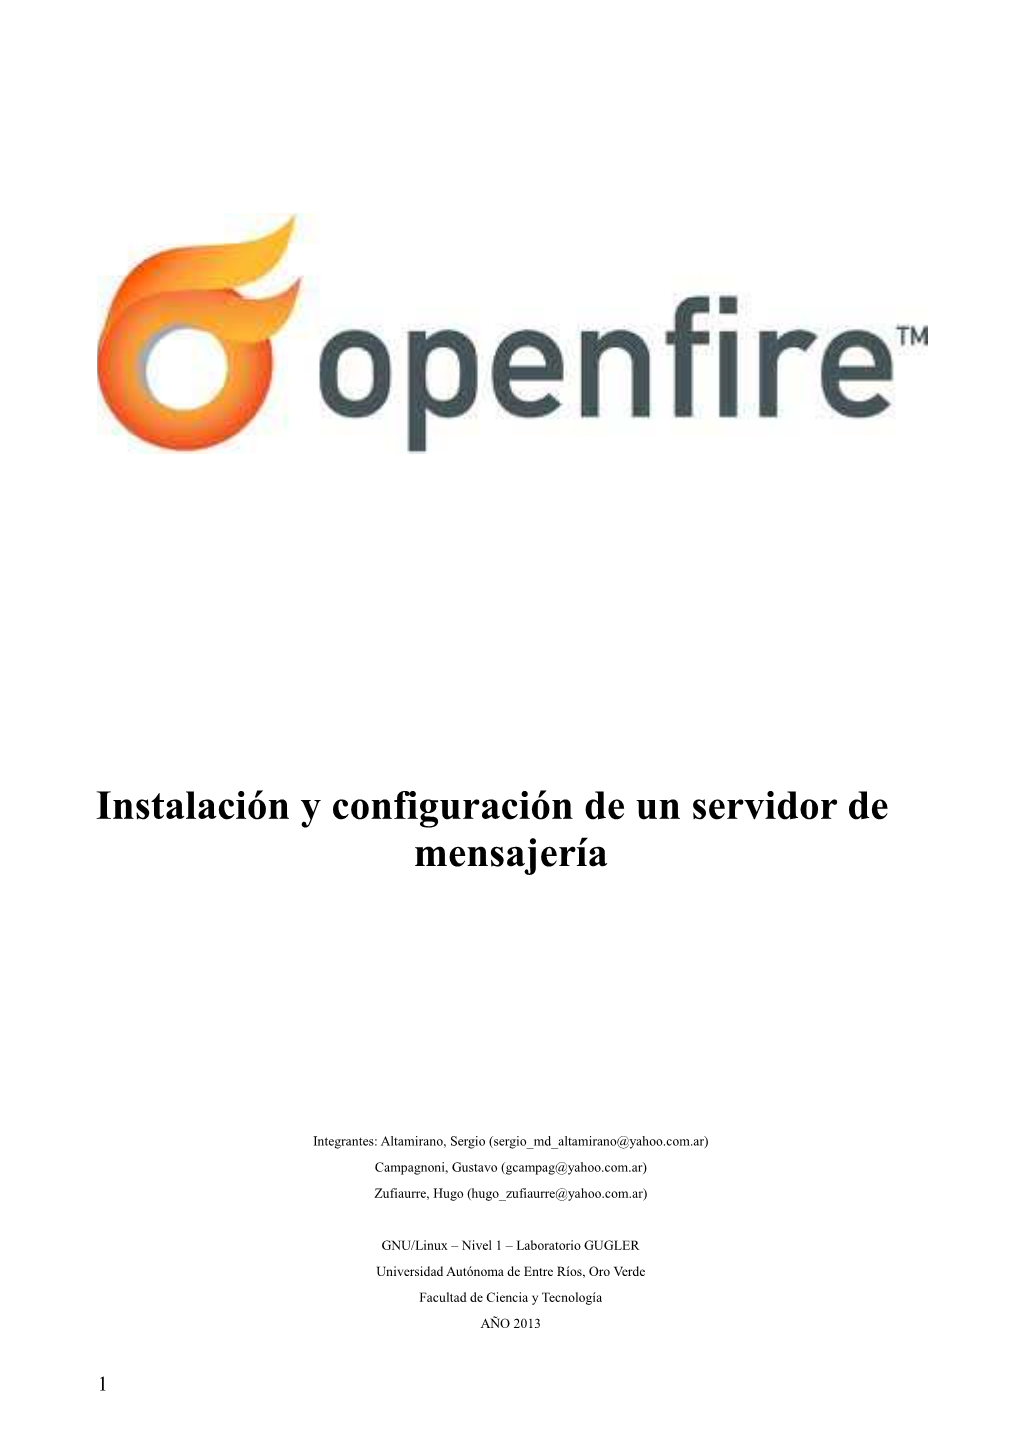 Openfire Es Un Sistema De Mensajeria Instantánea Escrito En Java Que Provee Licencias Comerciales Y GNU Y Que Utiliza El Protocolo JABBER/XMPP